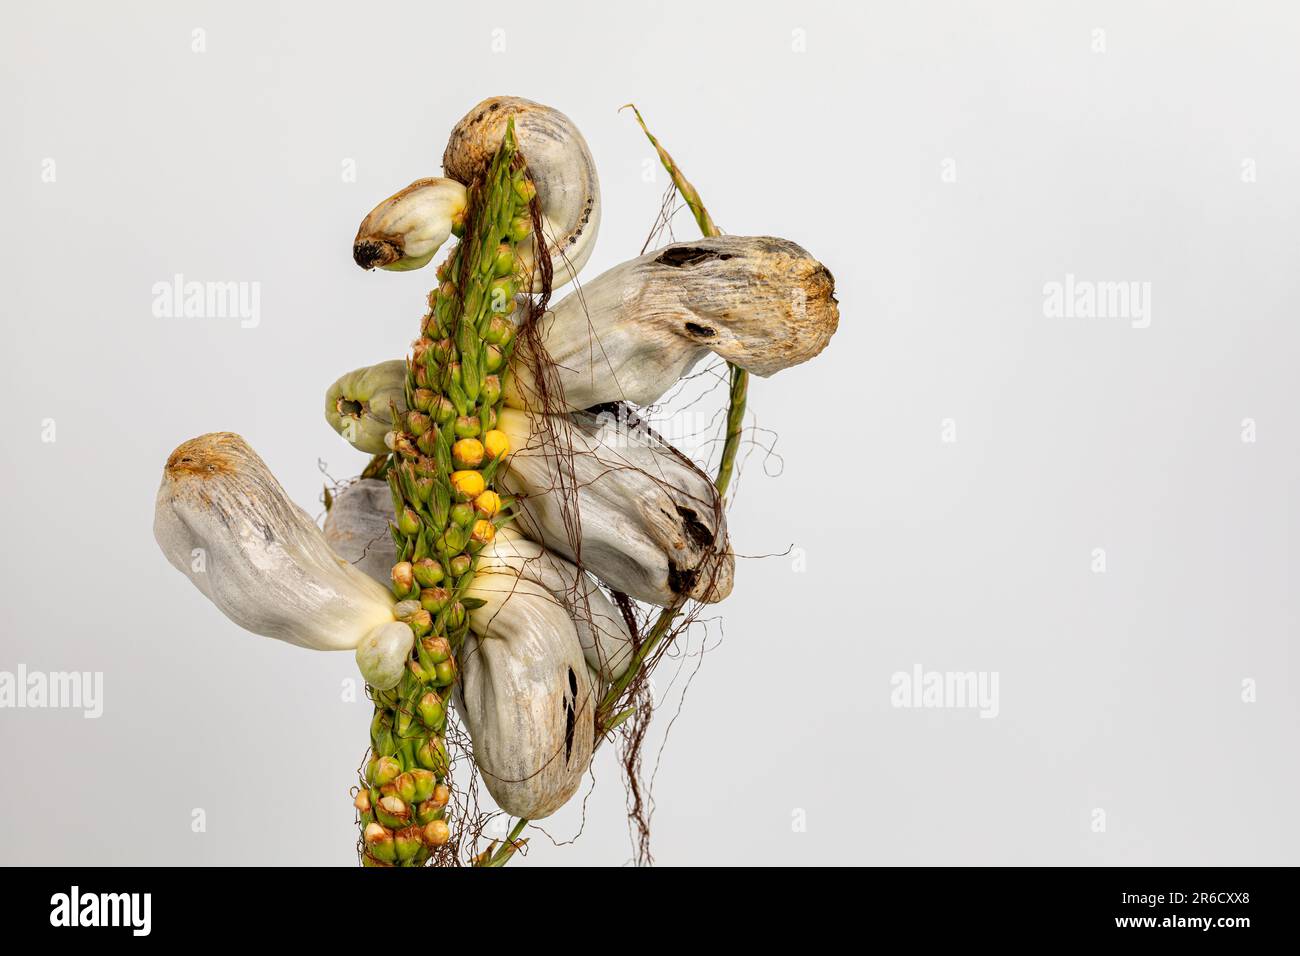 Des galettes de maïs sur la pampille de la tige de maïs isolées sur fond blanc. Agriculture, agriculture et maladie des plantes. Banque D'Images